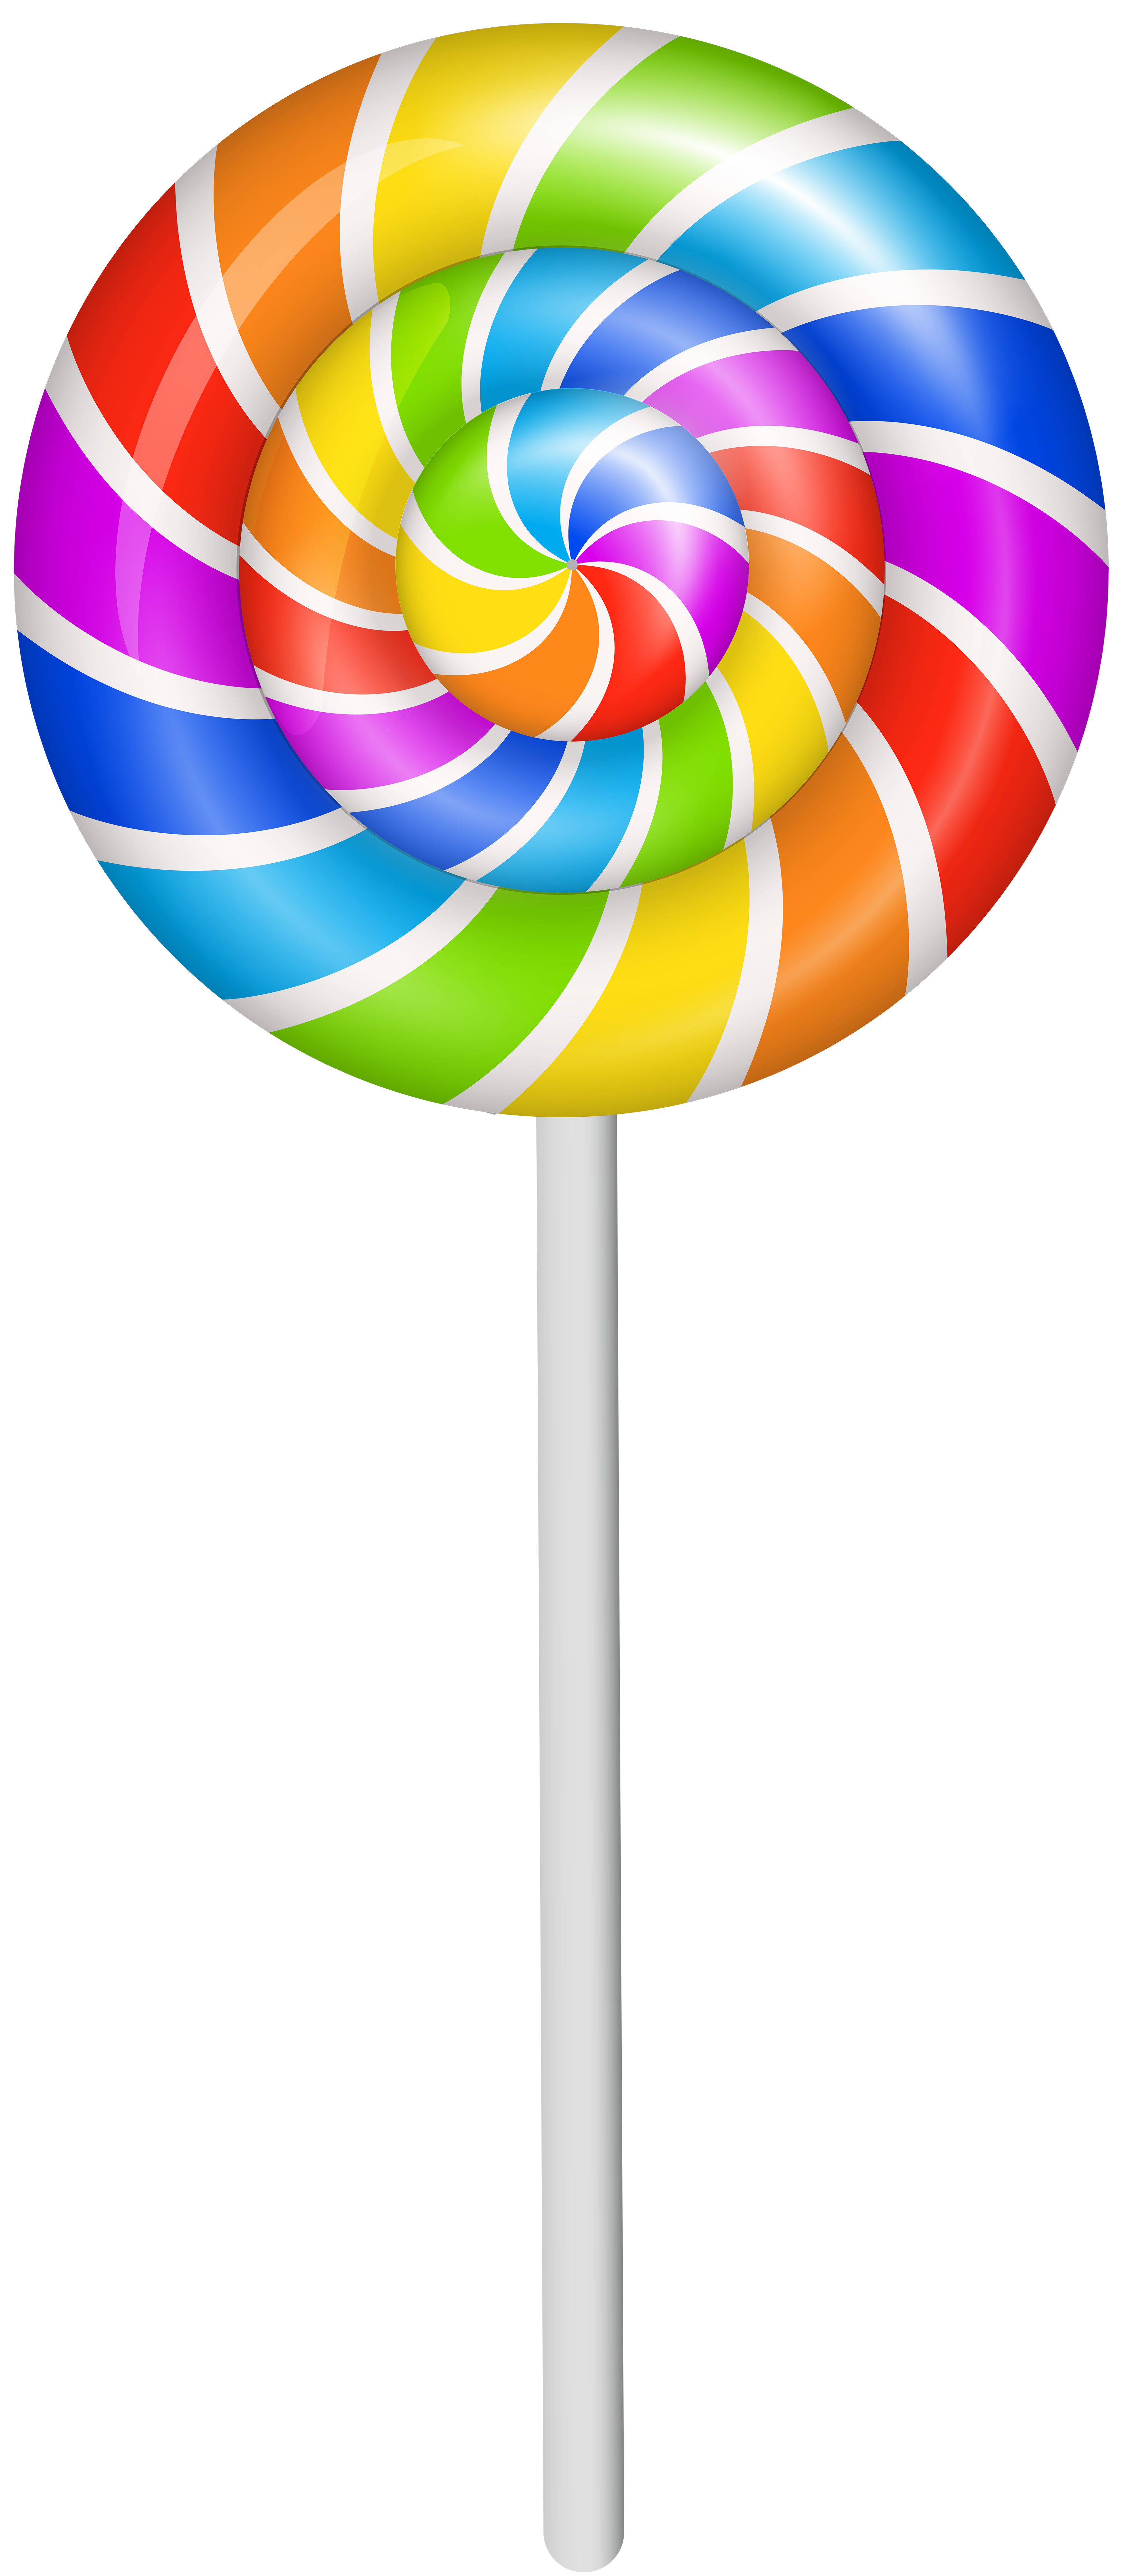 Colorful Lollipop PNG Clip Art Image.